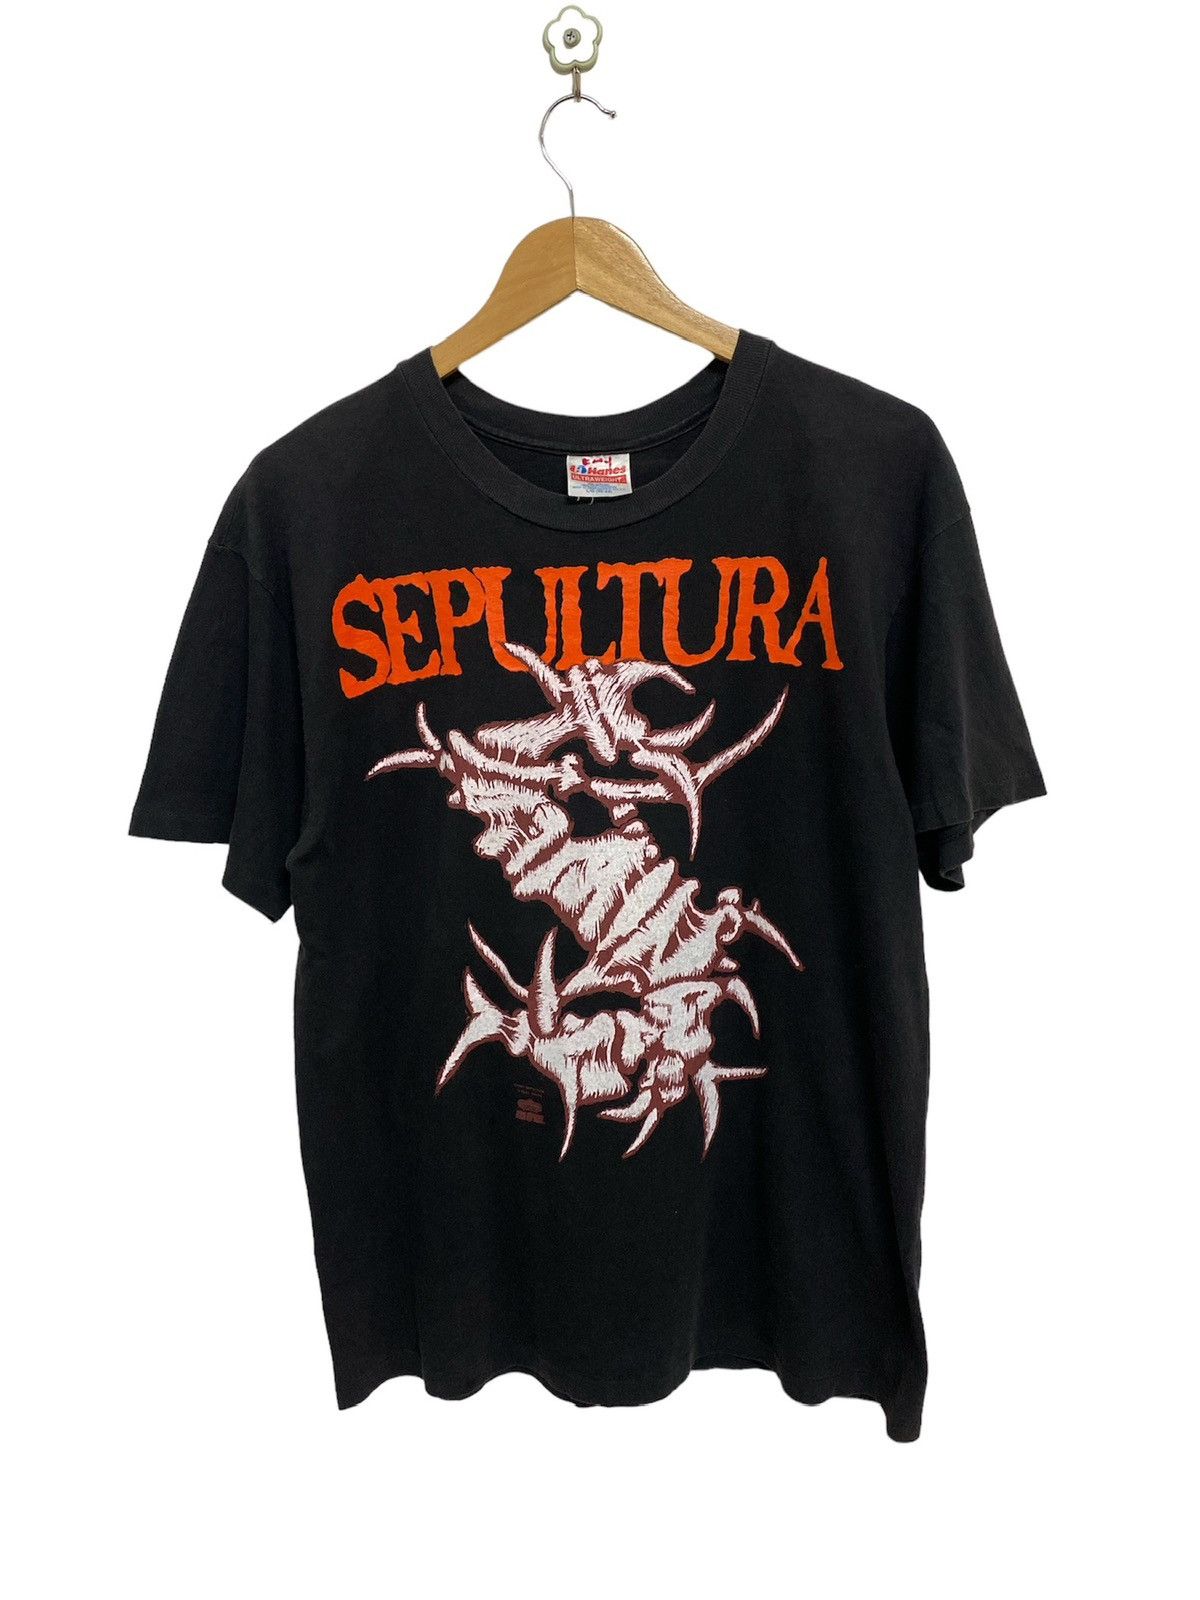 公式ストア Sepultura Sepultura vintage 90 Tシャツ 90's Vintage ...